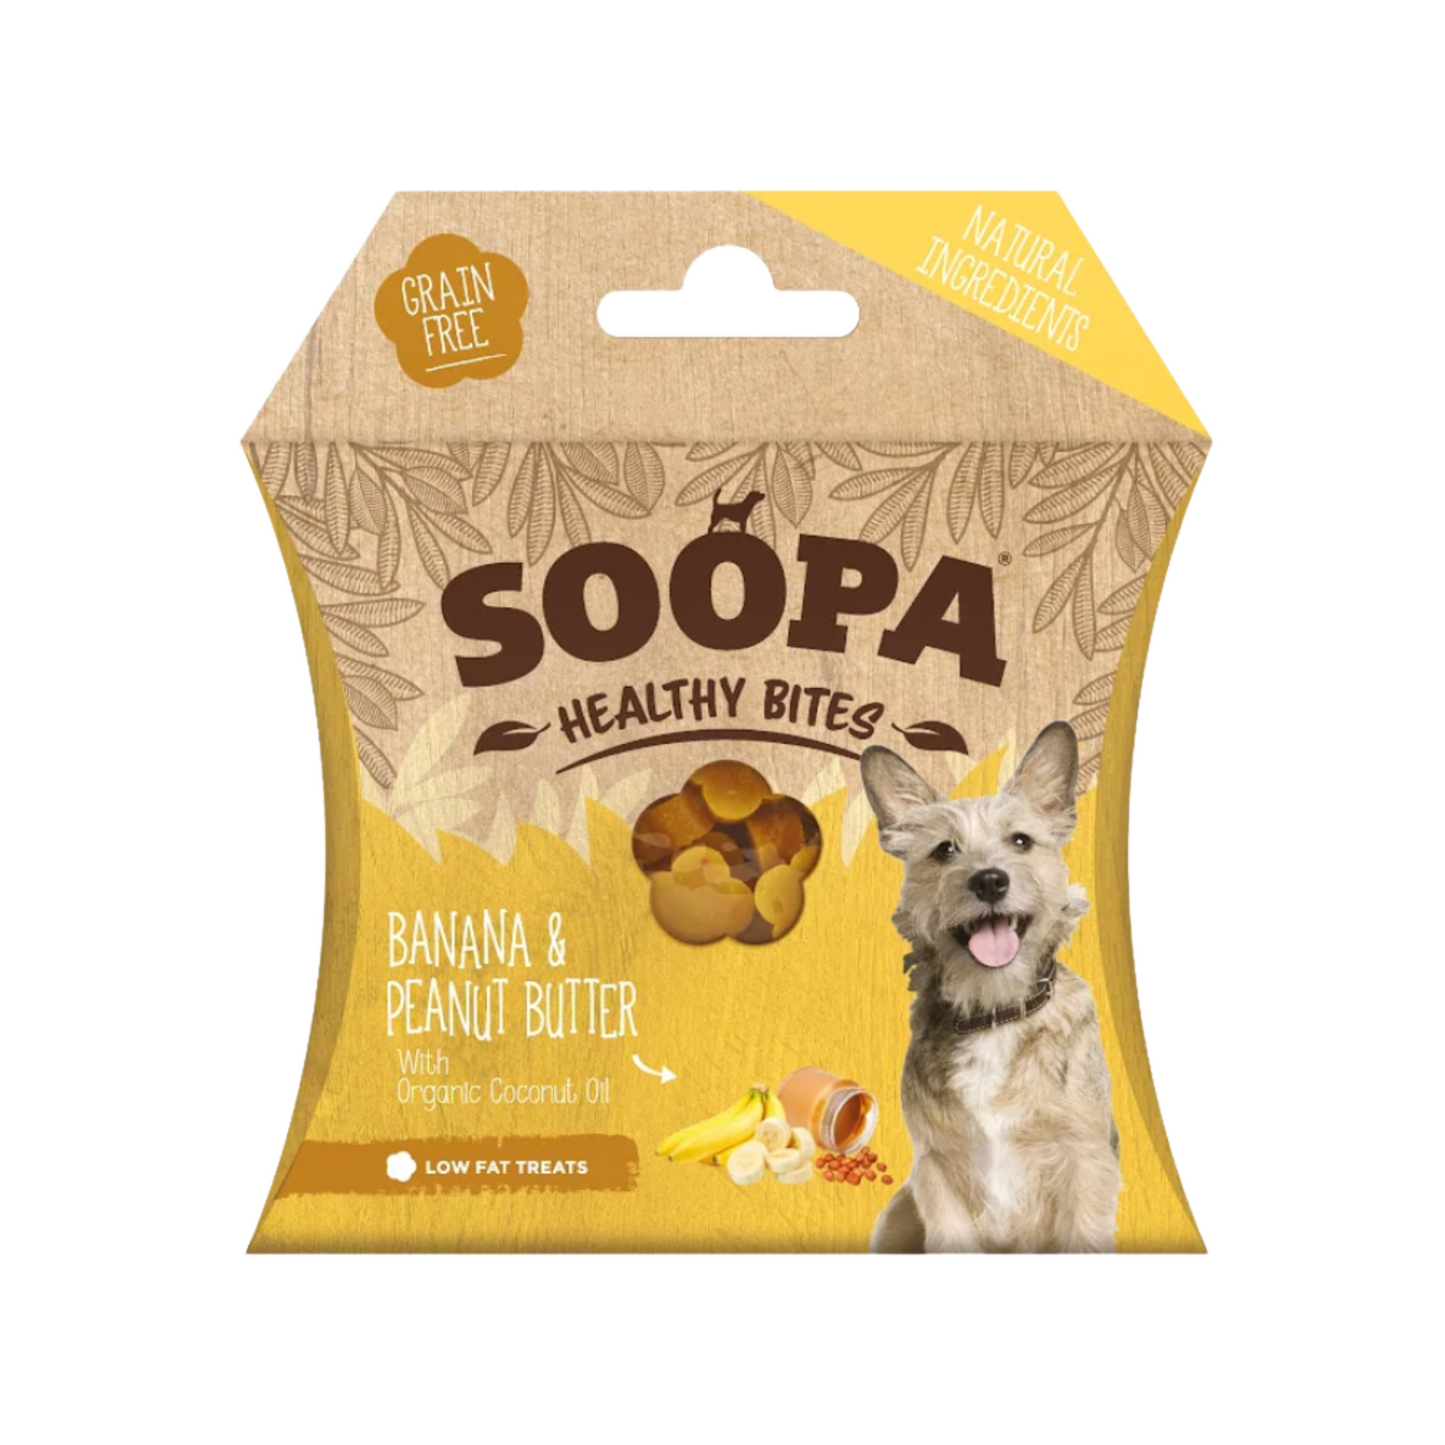 Soopa Banana & Peanut Butter Healthy Bites Dog Treats 50g